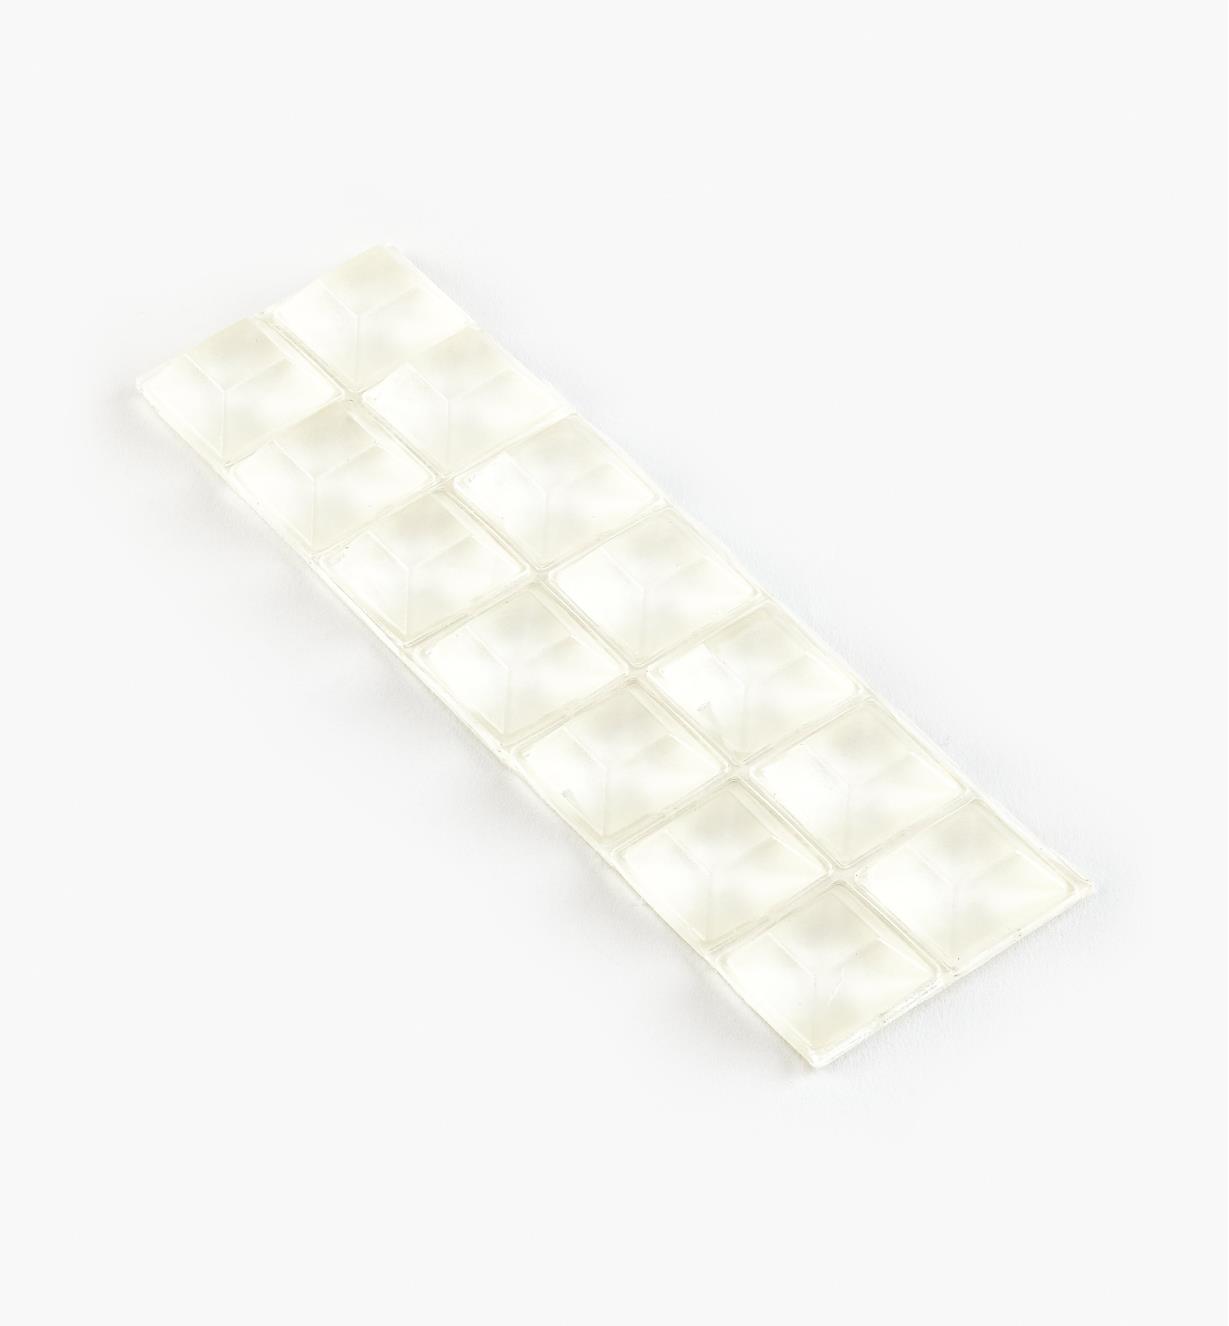 00S2022 - Patins amortisseurs carrés et plats de 20,6 mm x 7,7 mm, le paquet de 14